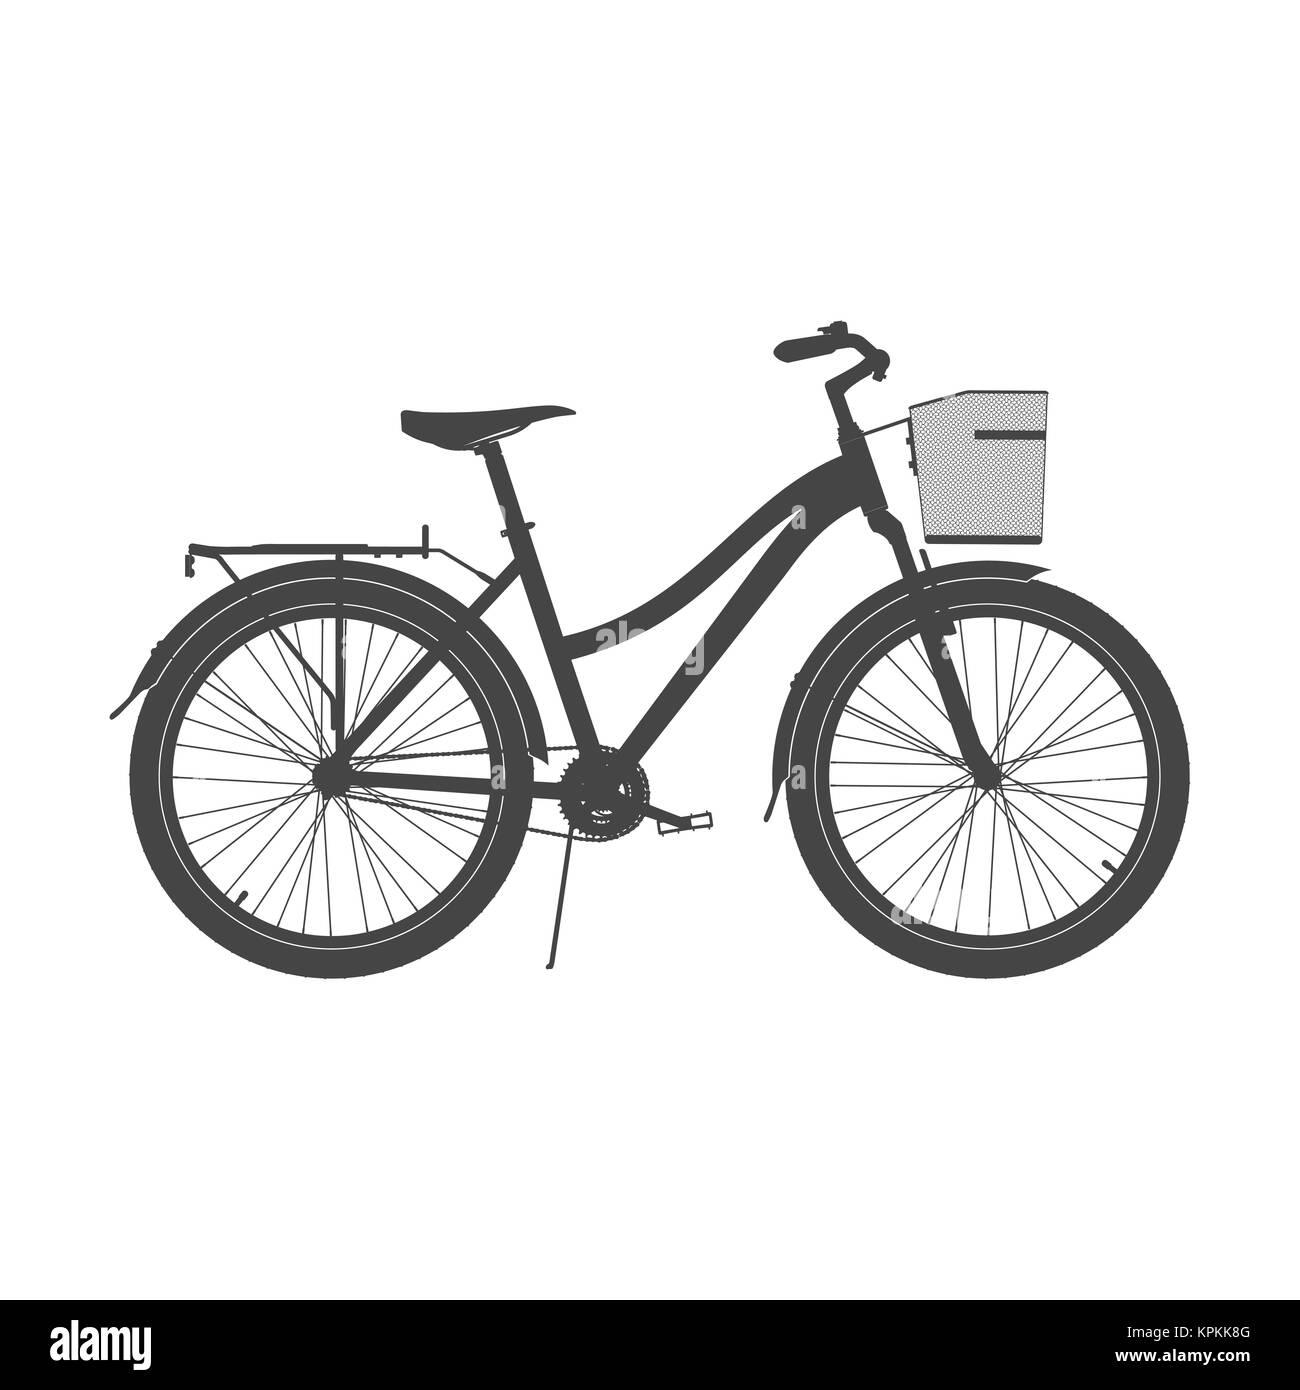 Signora City Bike Silhouette. Donna Comfort illustrazione di bicicletta Foto Stock